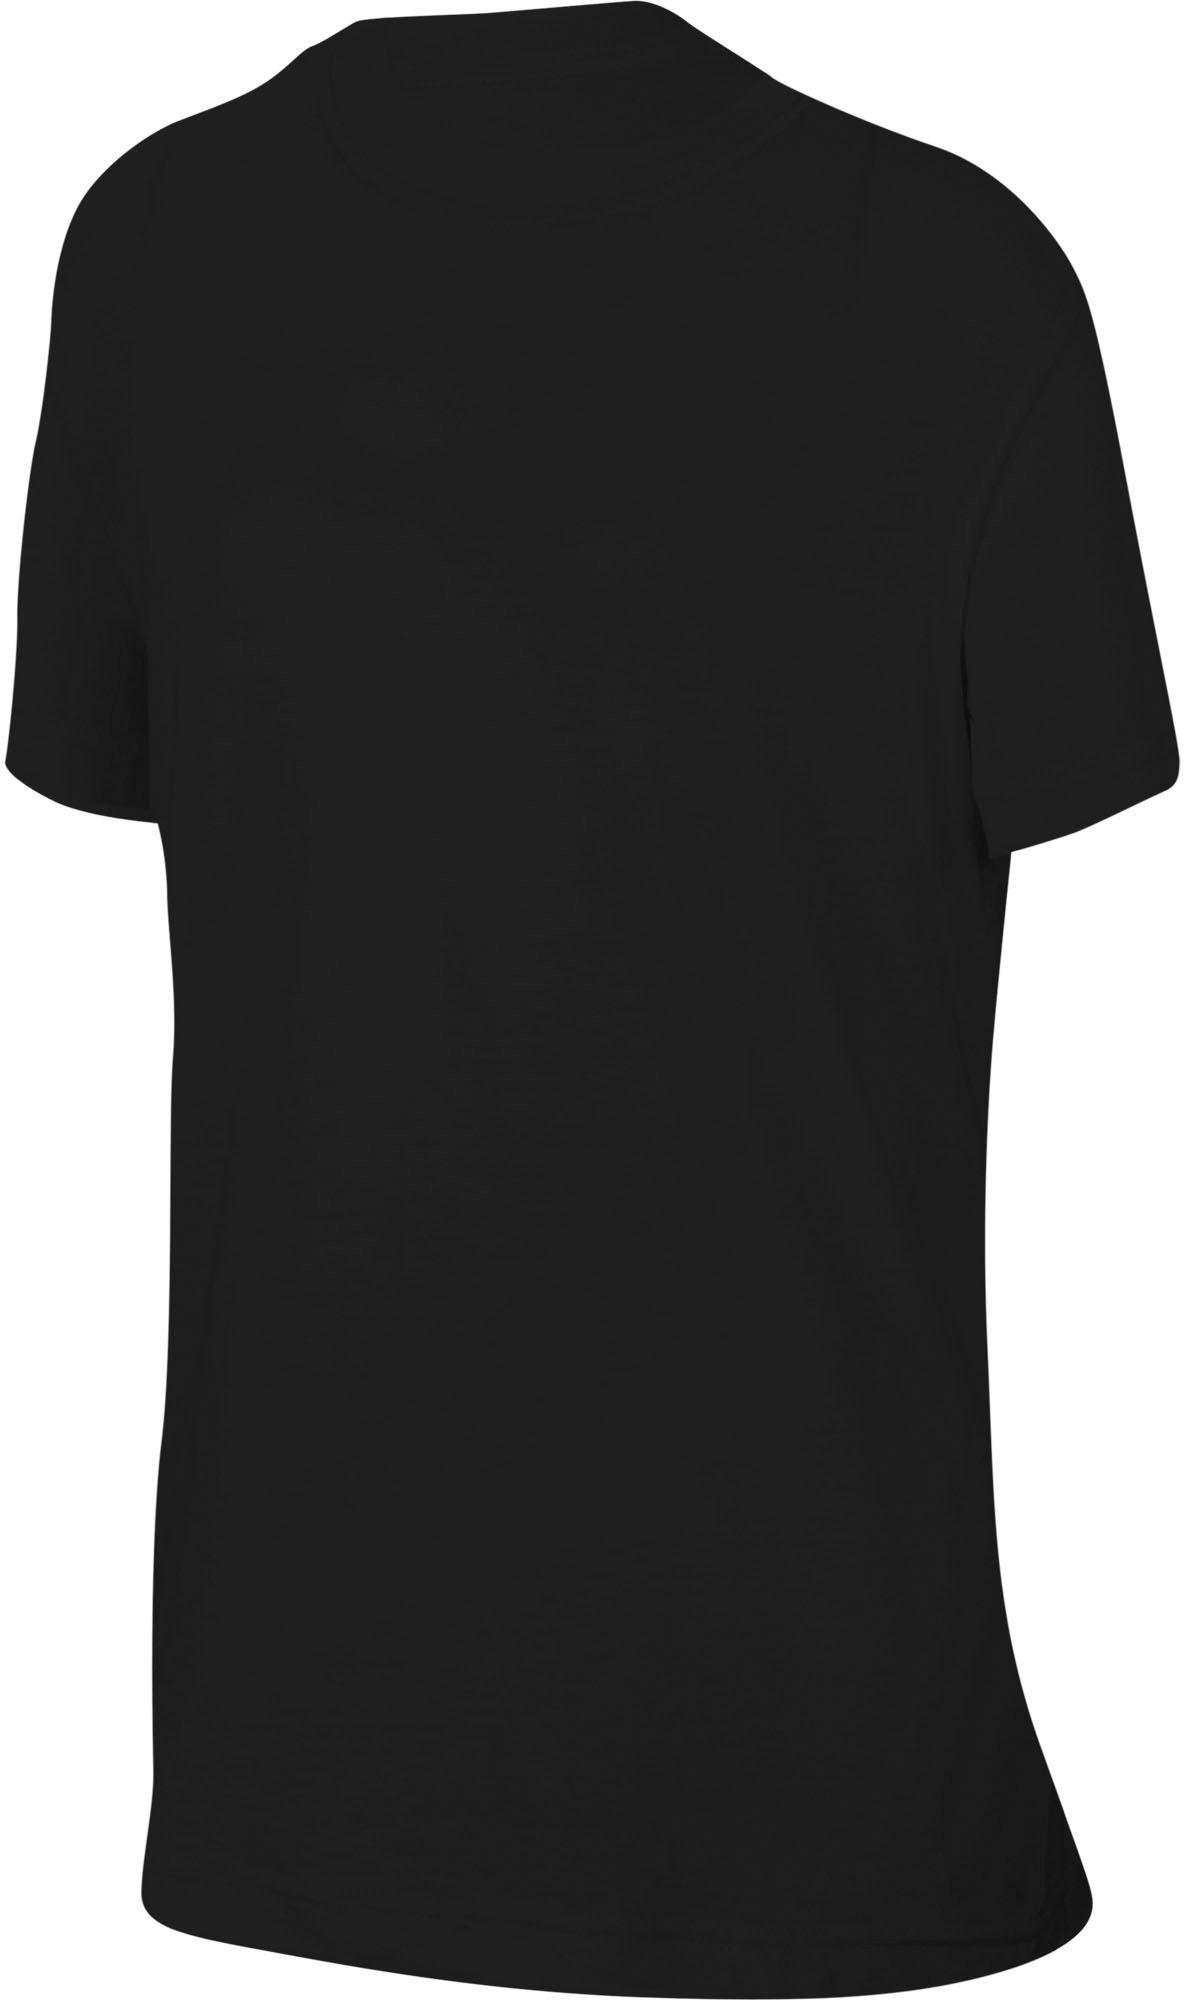 Kids' Sportswear Big T-Shirt (Girls) Nike T-Shirt schwarz